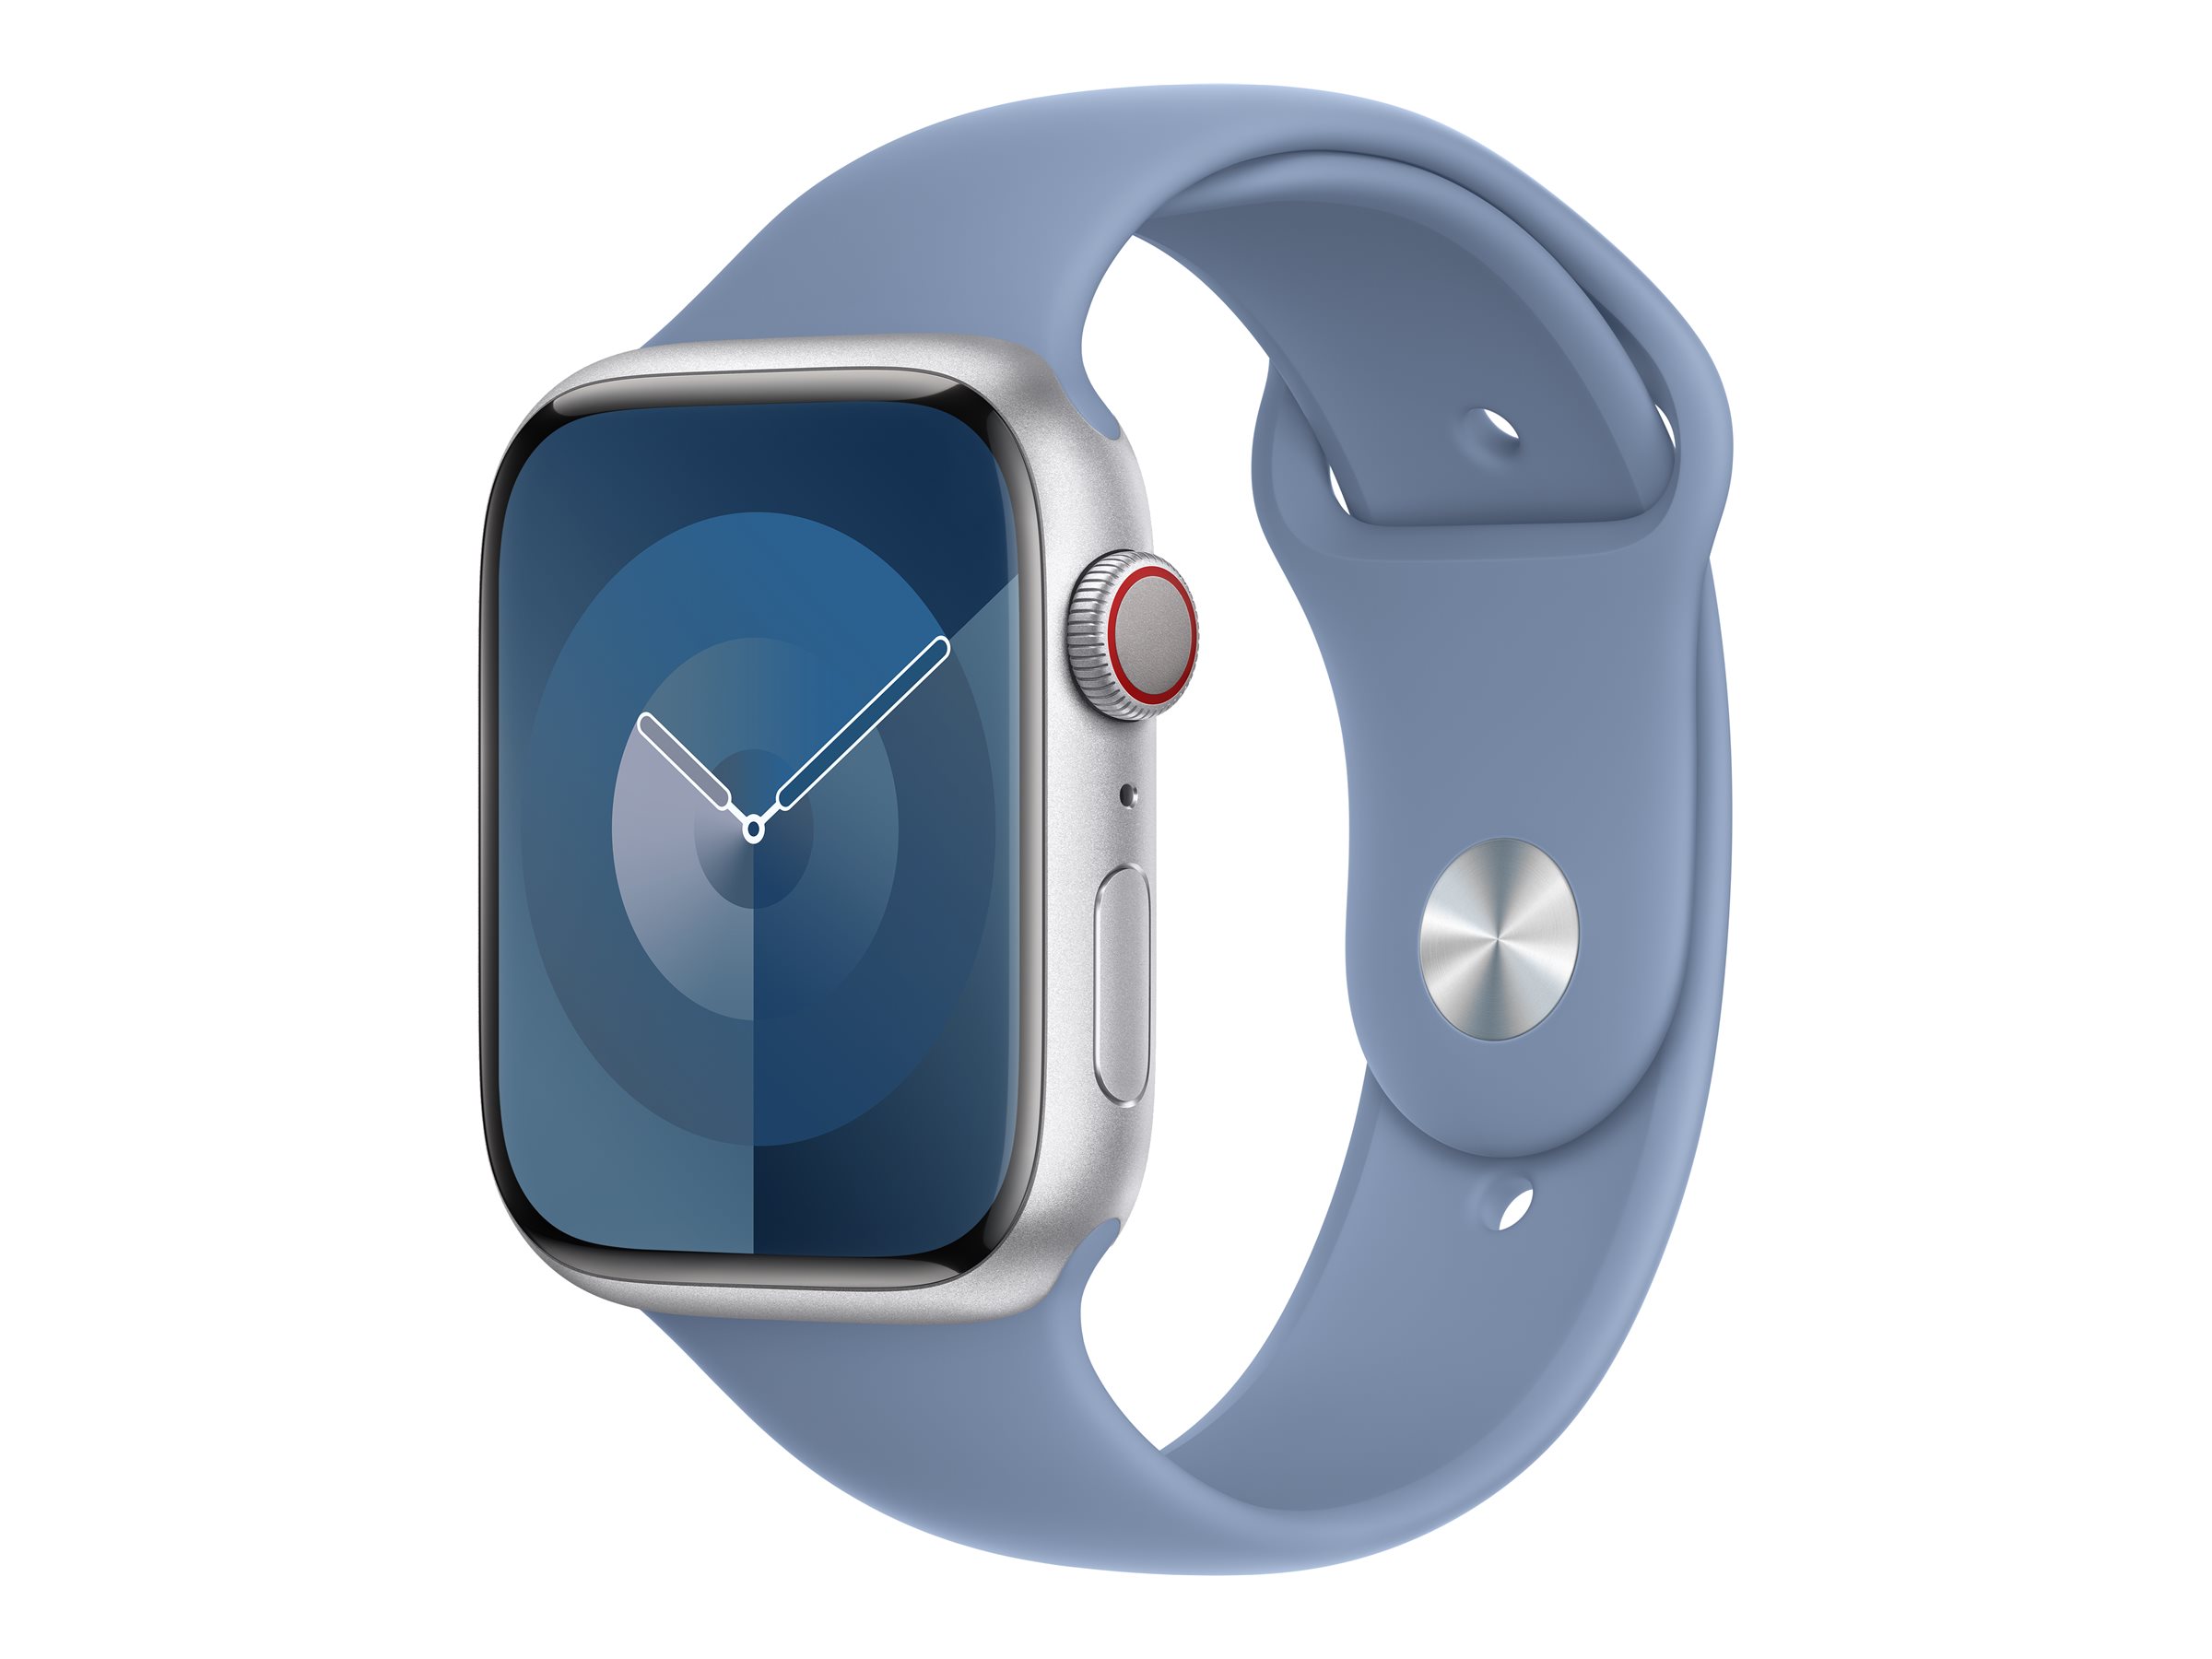 Apple - Bracelet pour montre intelligente - 45 mm - M/L (s'adapte aux poignets de 160 - 210 mm) - bleu hivernal - MT443ZM/A - Accessoires pour smart watch